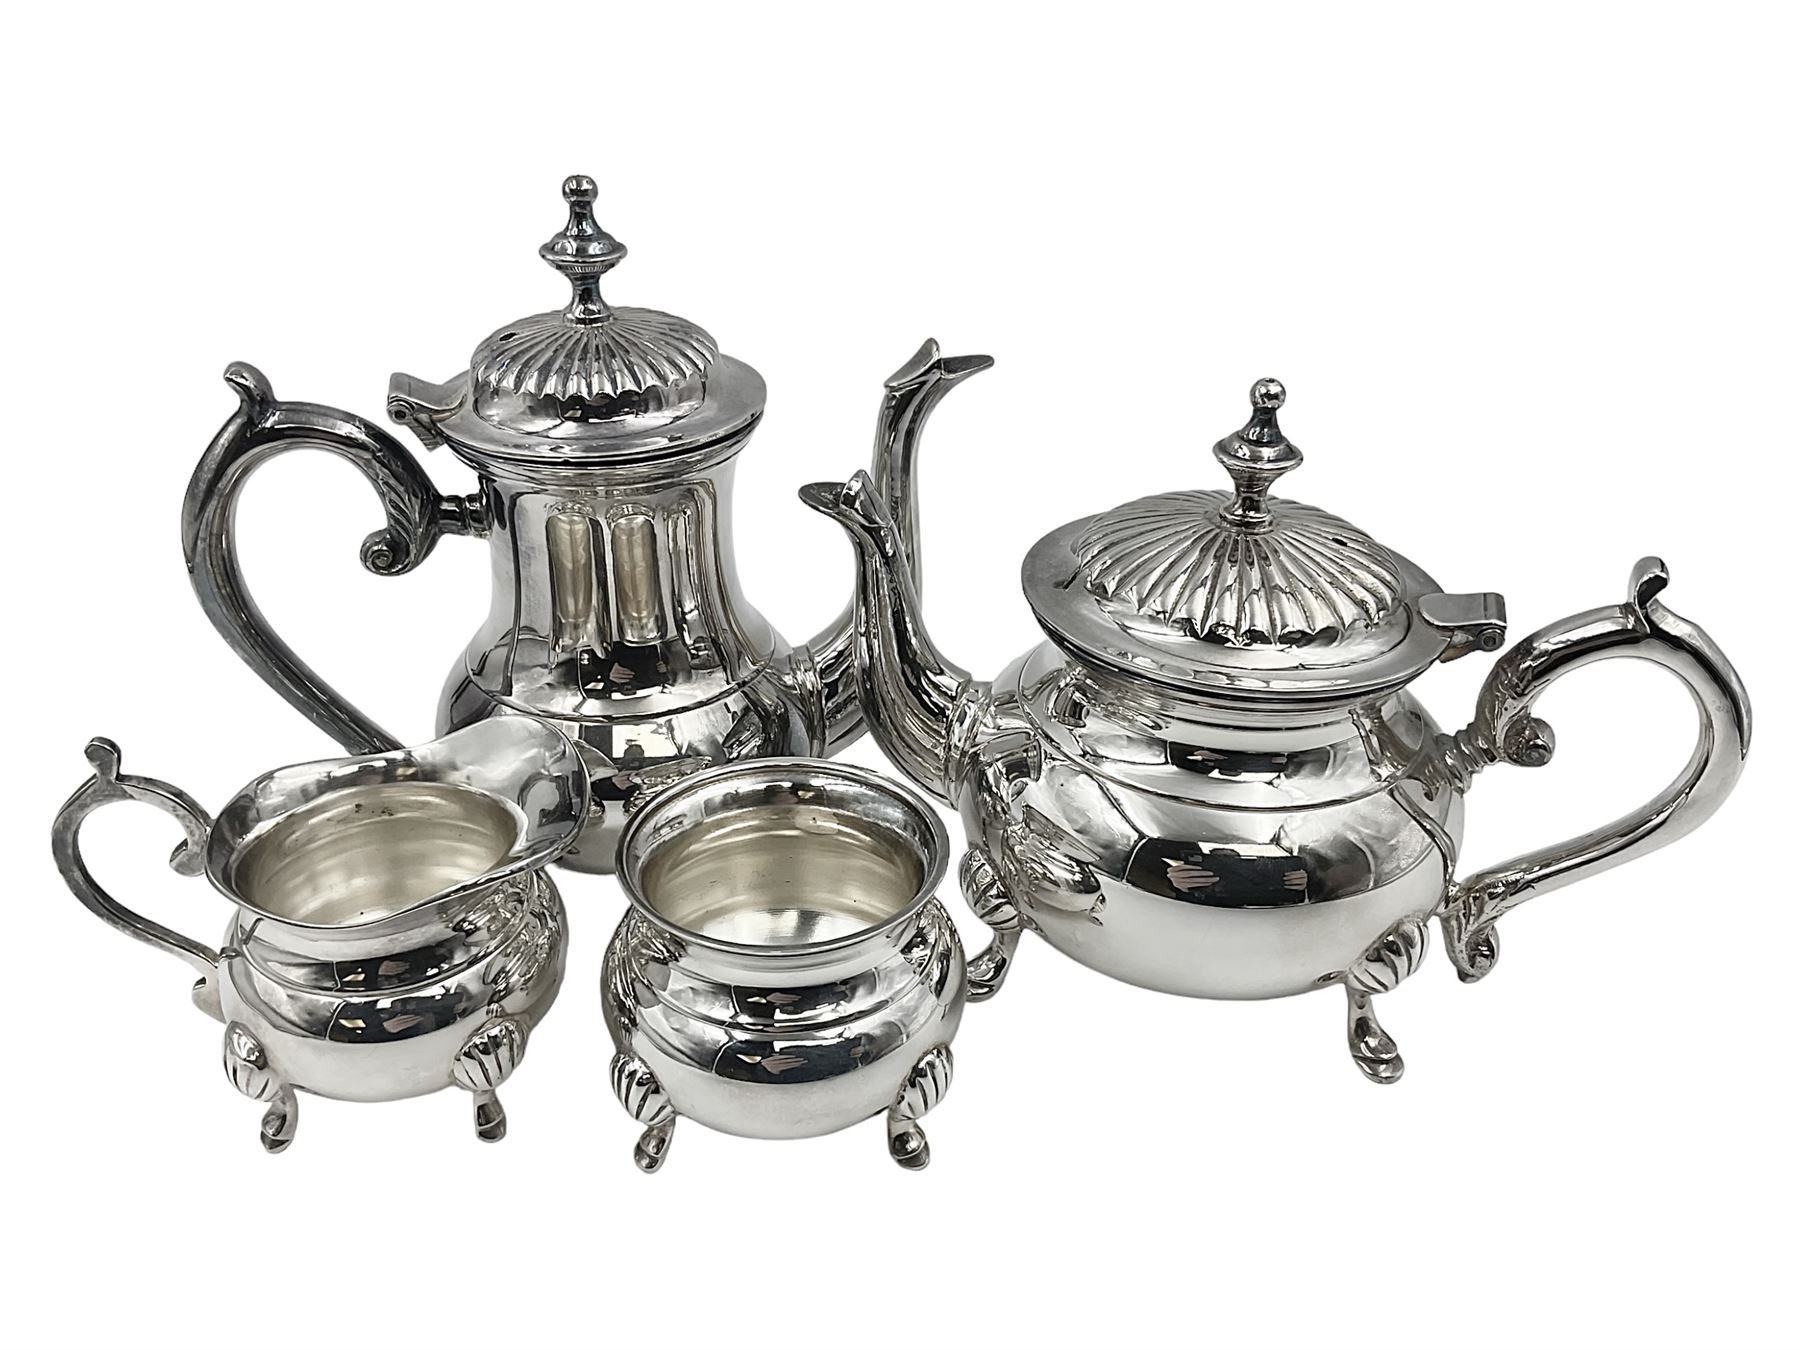 Miniature silver plated four piece tea service